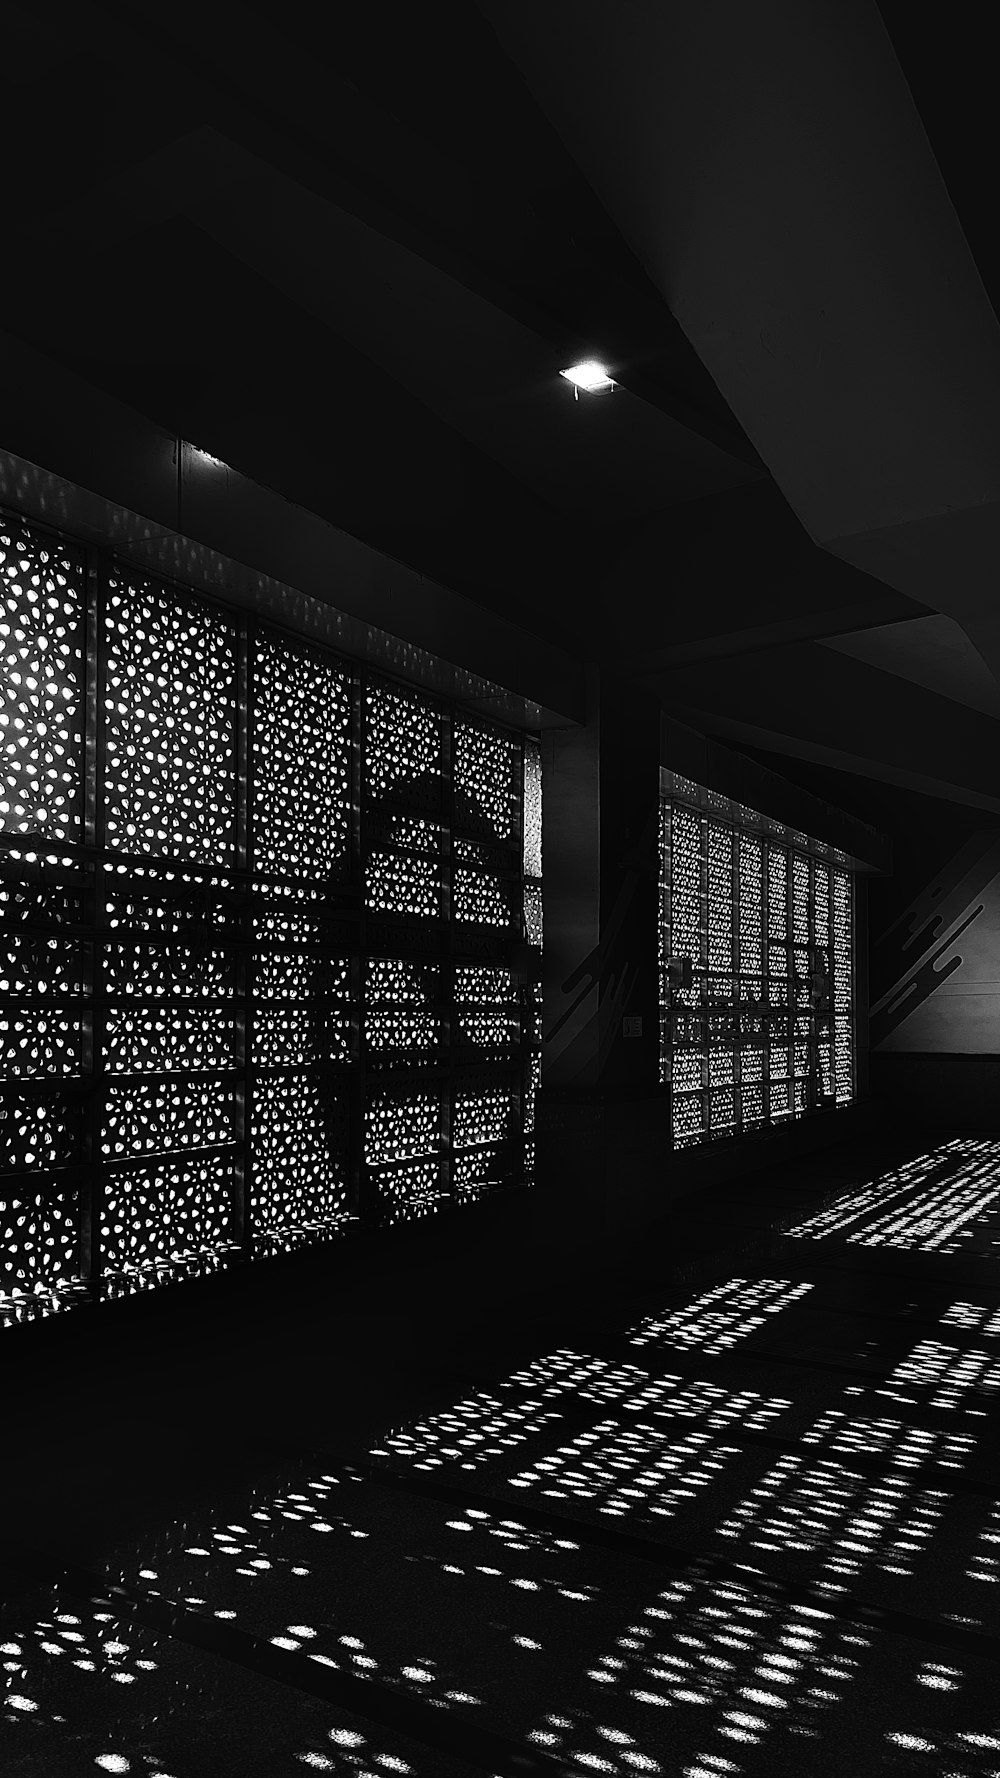 Una foto in bianco e nero di una stanza con molte luci